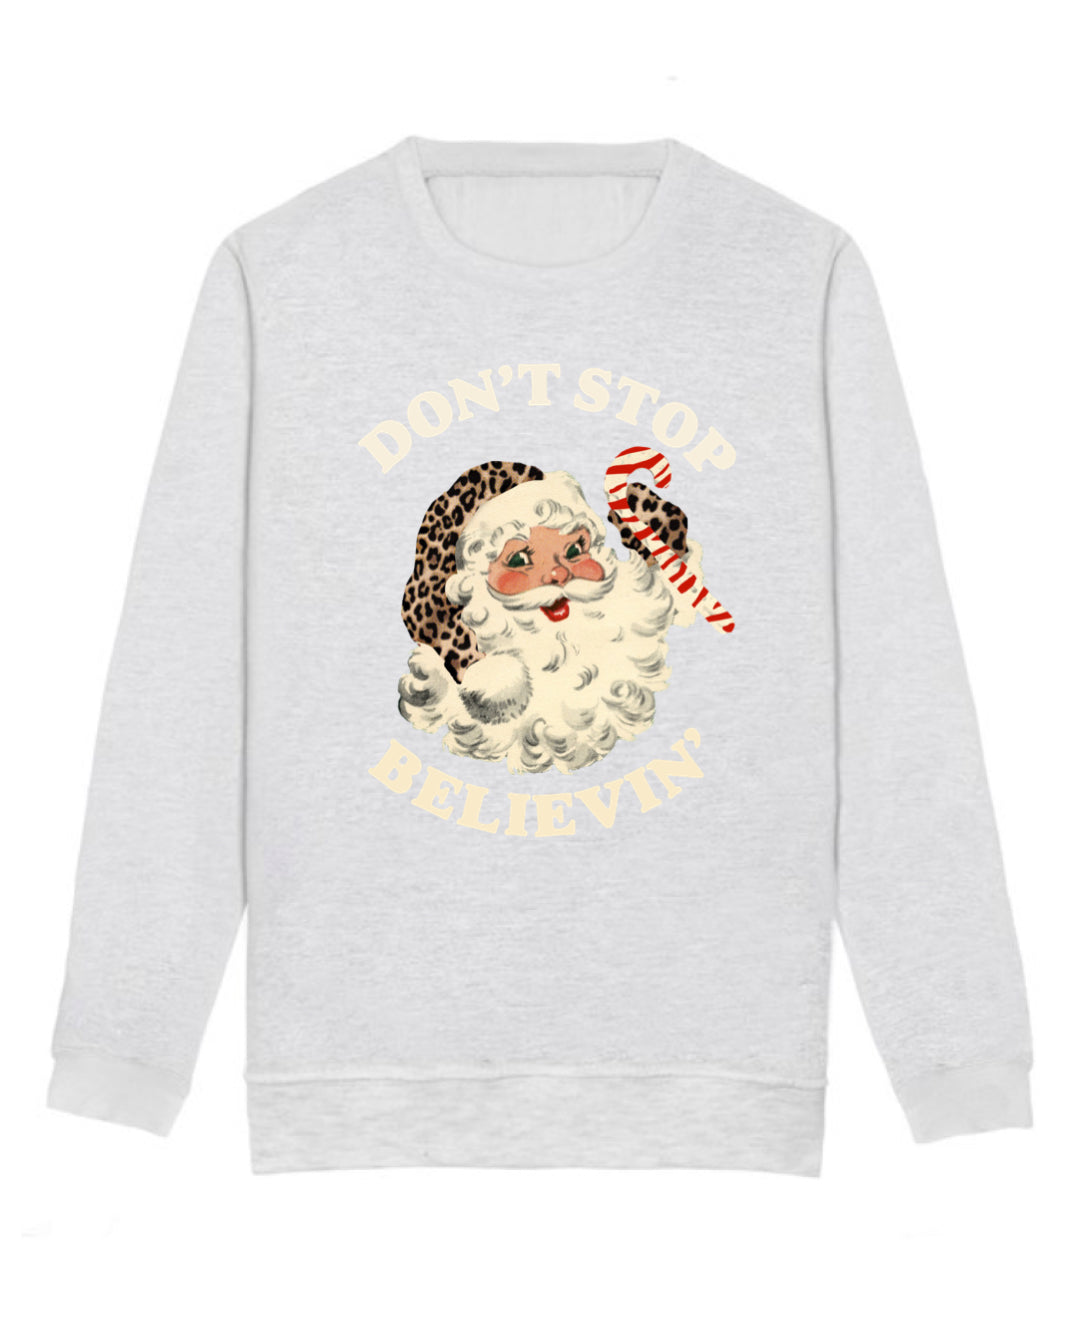 Kids GREY Don’t Stop Believin’ Sweatshirt